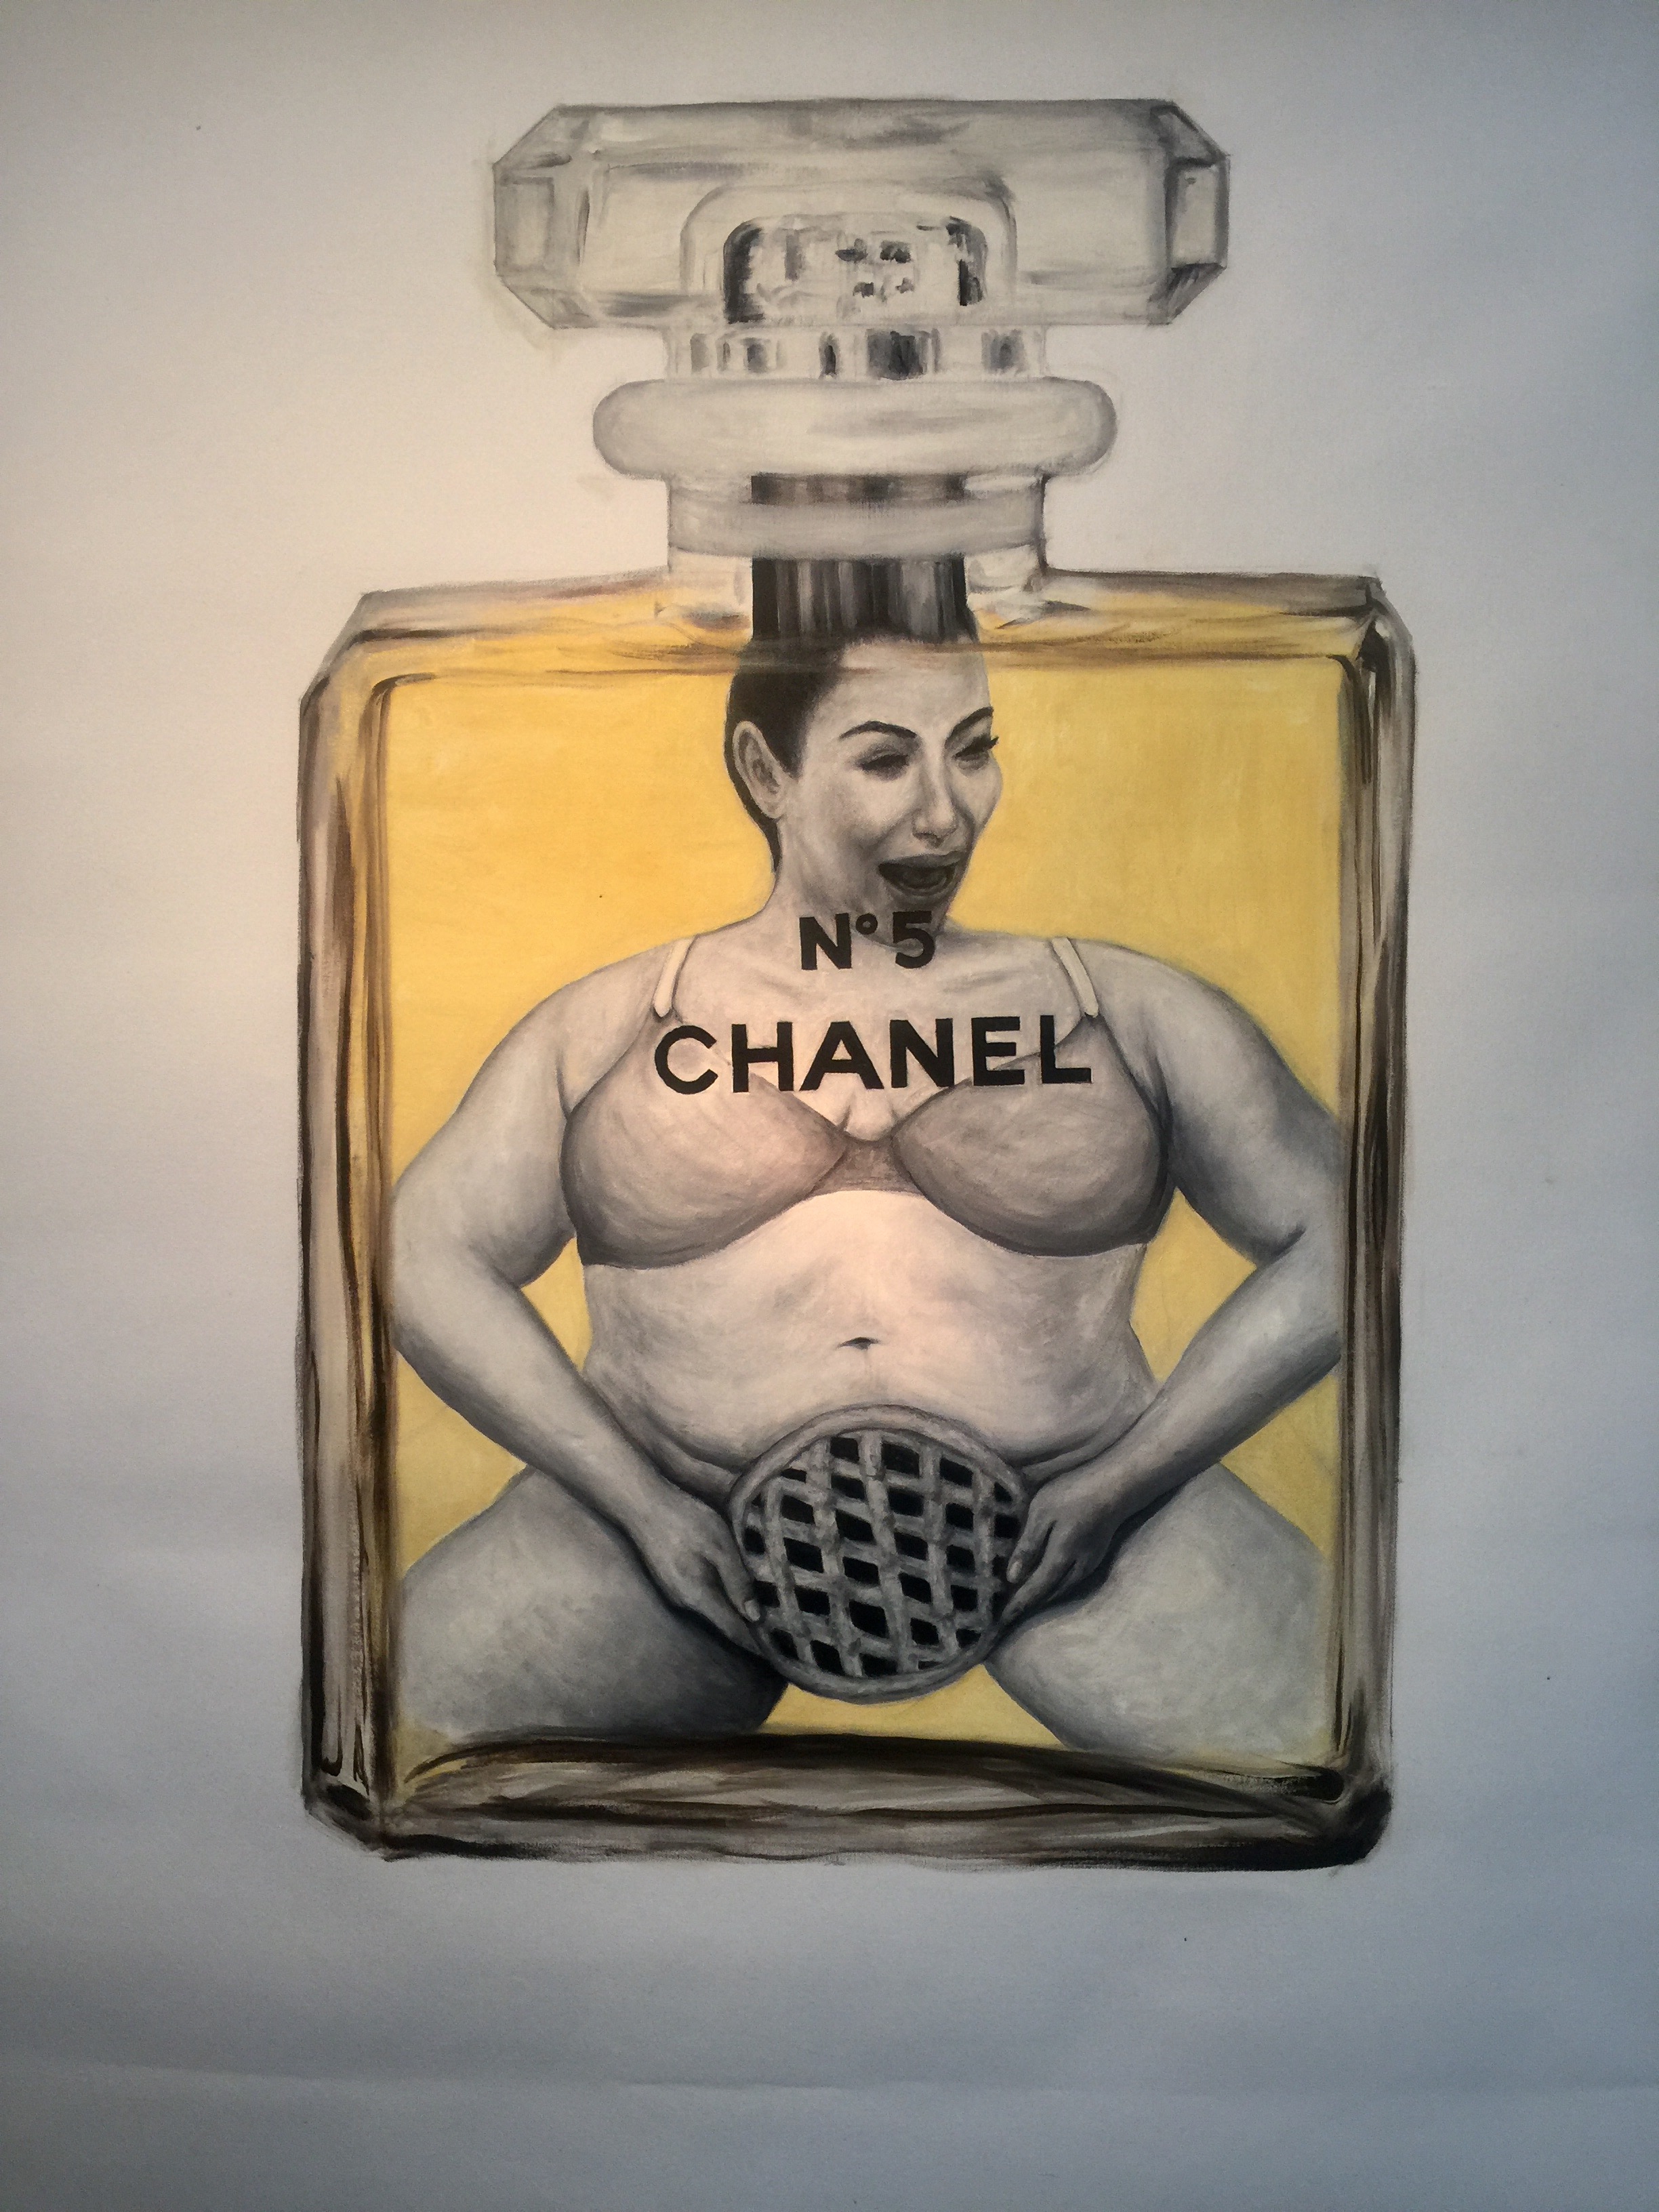  I am Kim Kardashian - Oil on Canvas 60x60 inch 2016 